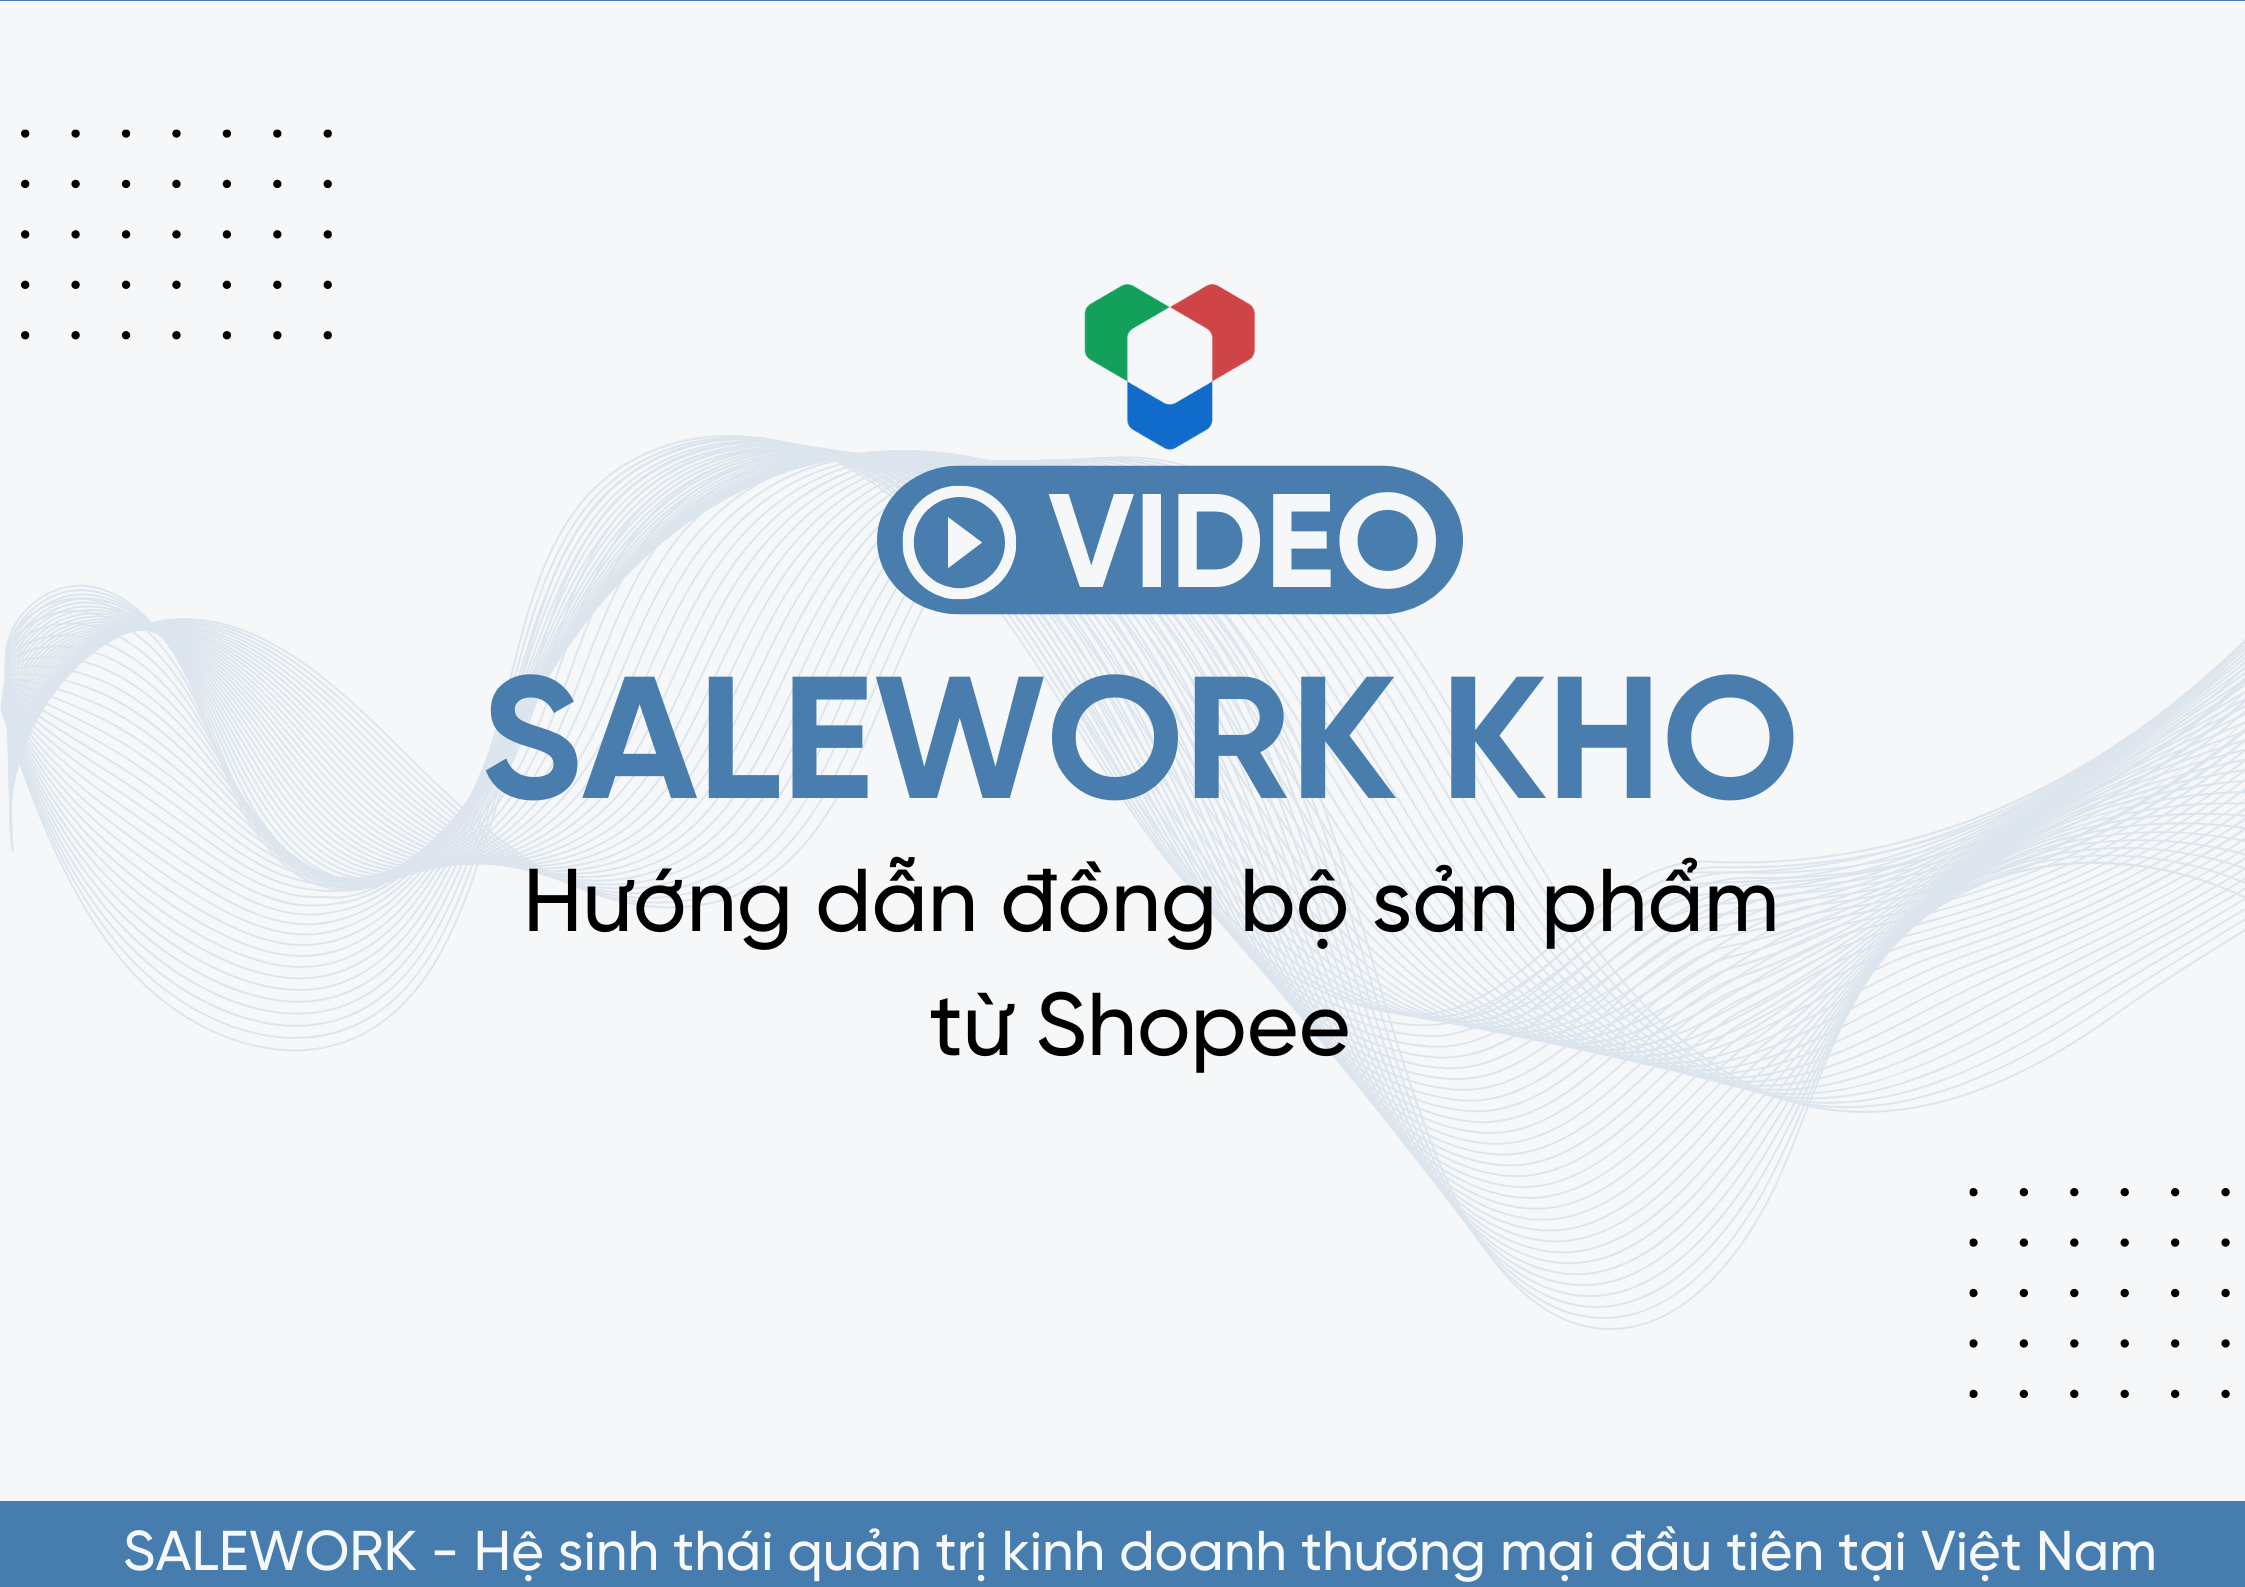 [VIDEO] Hướng dẫn đồng bộ sản phẩm từ Shopee về Salework Kho - 13